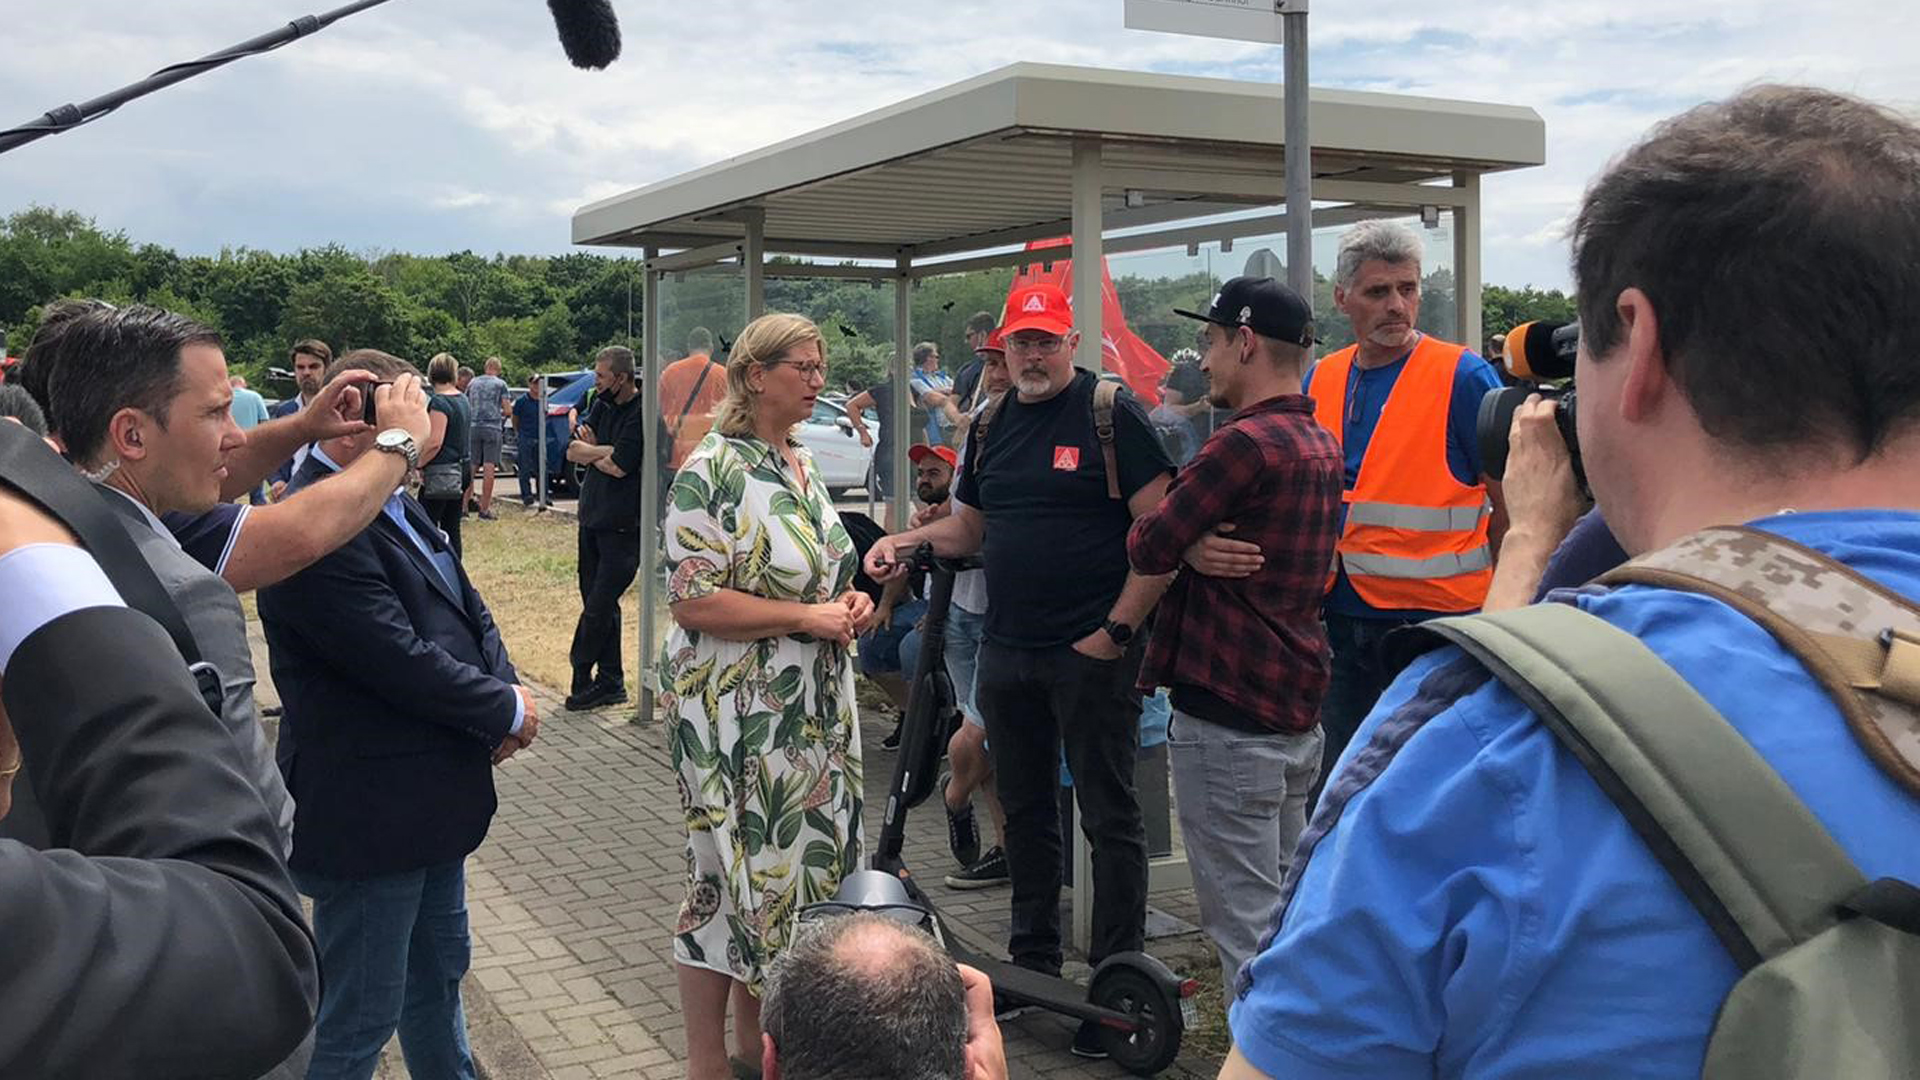 Saarlands Ministerpräsidentin Rehlinger spricht mit Ford-Beschäftigten in Saarlouis | Frauke Feldmann/SR